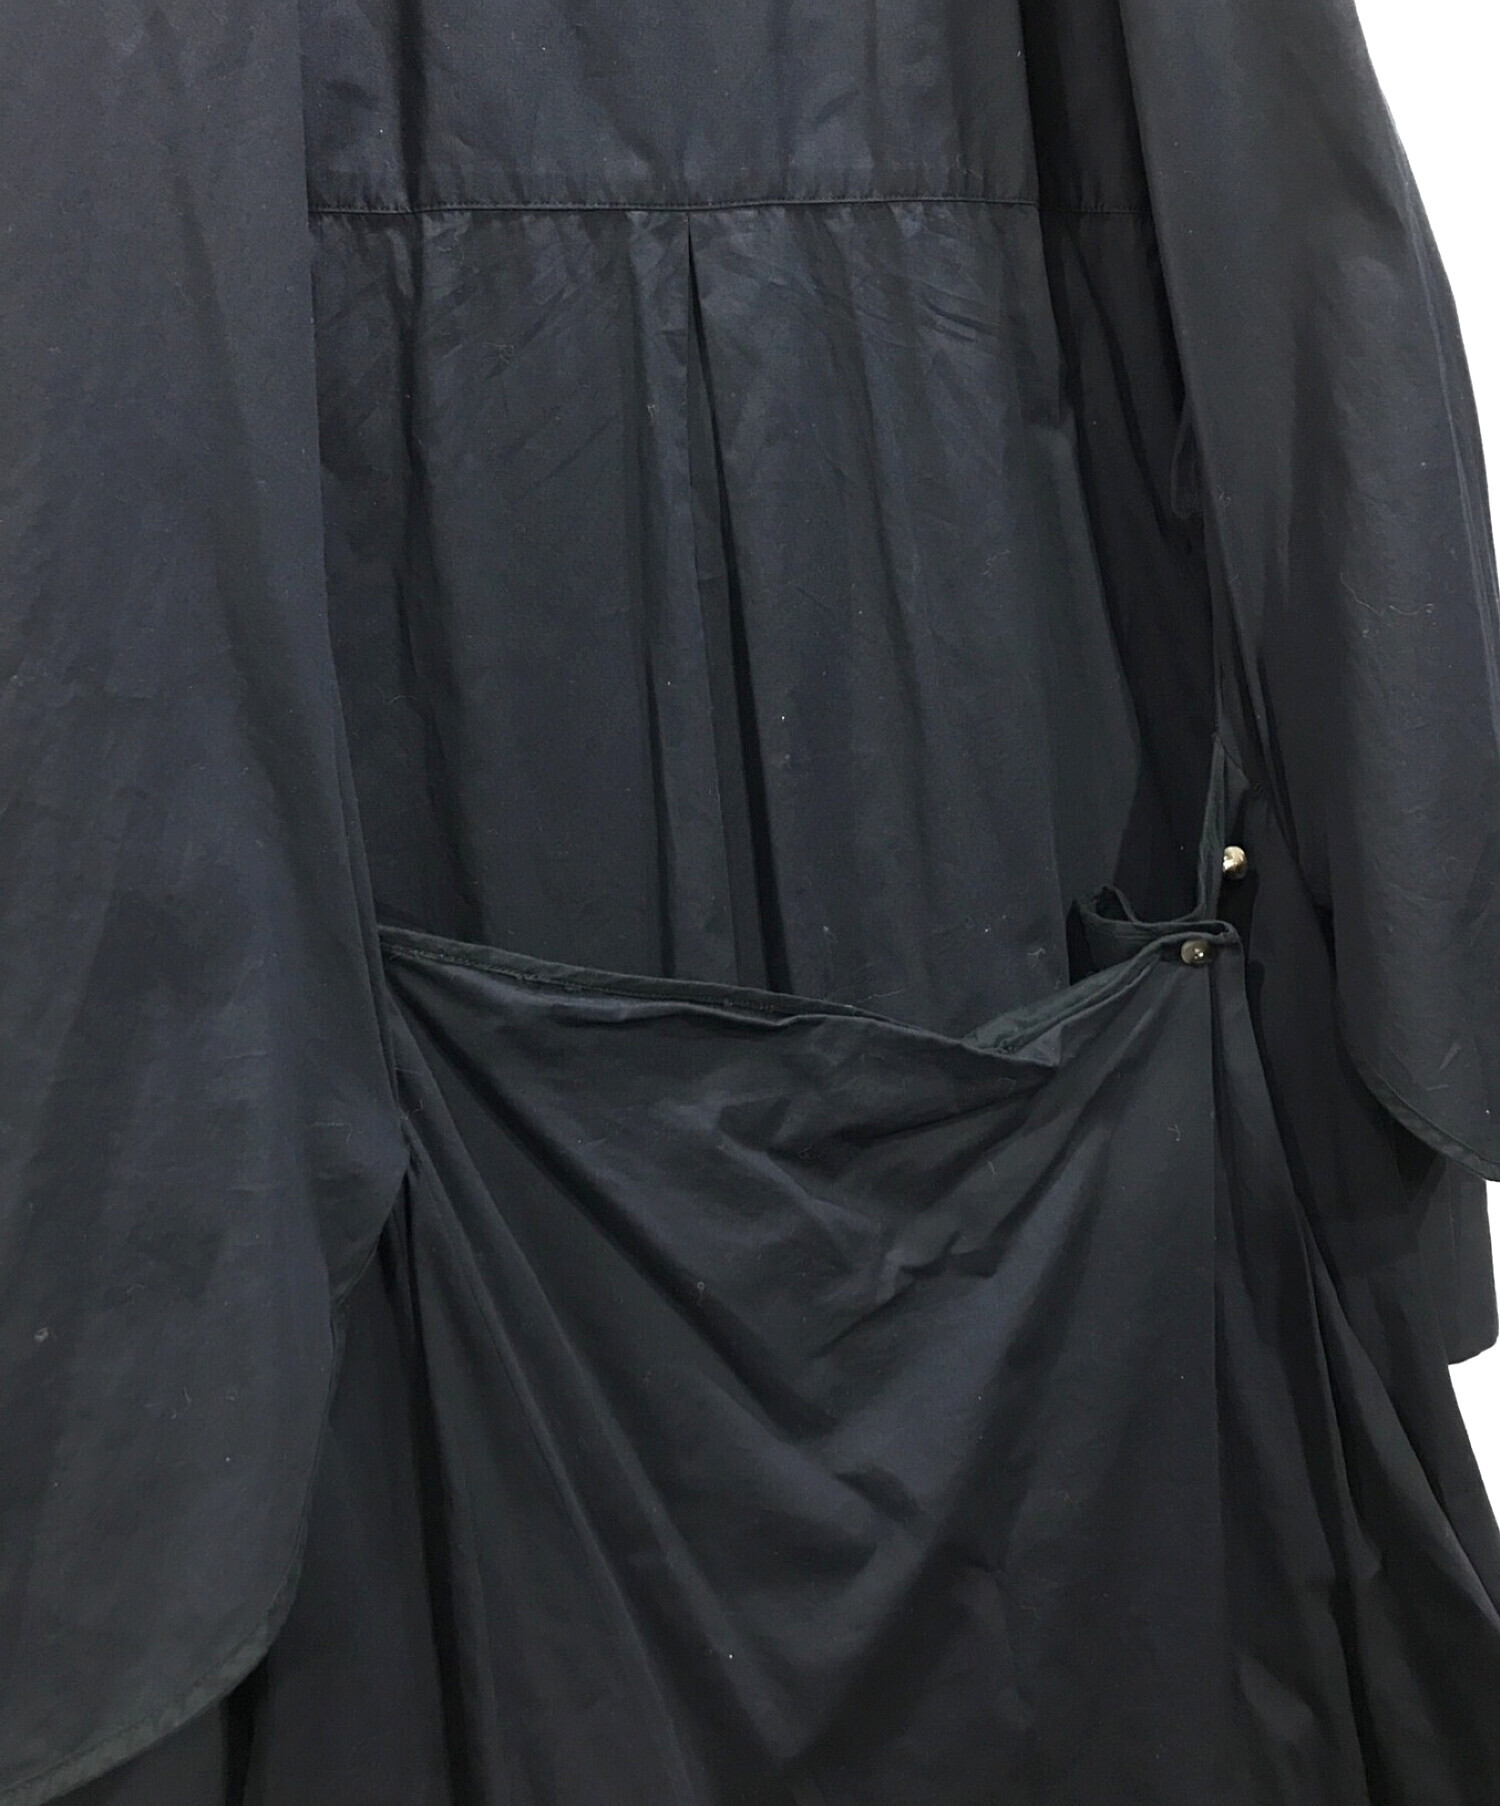 ENFOLD (エンフォルド) SOMELOS レイヤーシャツ ワンピース ブラック サイズ:38